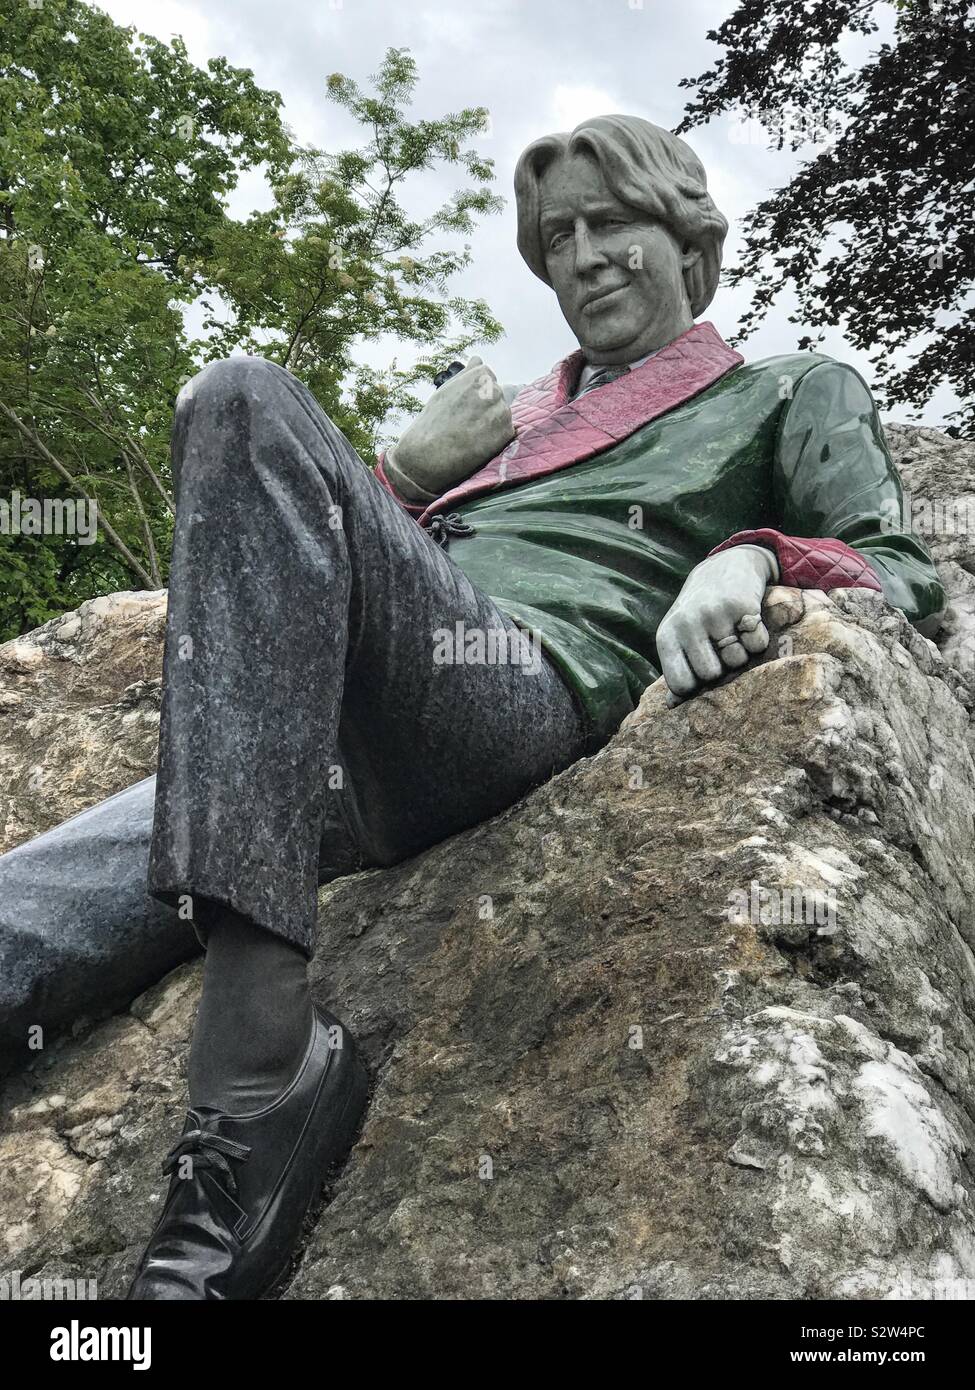 Dublin, Irlande - 7 juin 2019 : Oscar Wilde est dépeint comme une sculpture au sommet d'un rocher sur Merrion Square. La statue, par Danny Osborne, est composée d'une variété de pierres et a été dévoilé en 1997. Banque D'Images